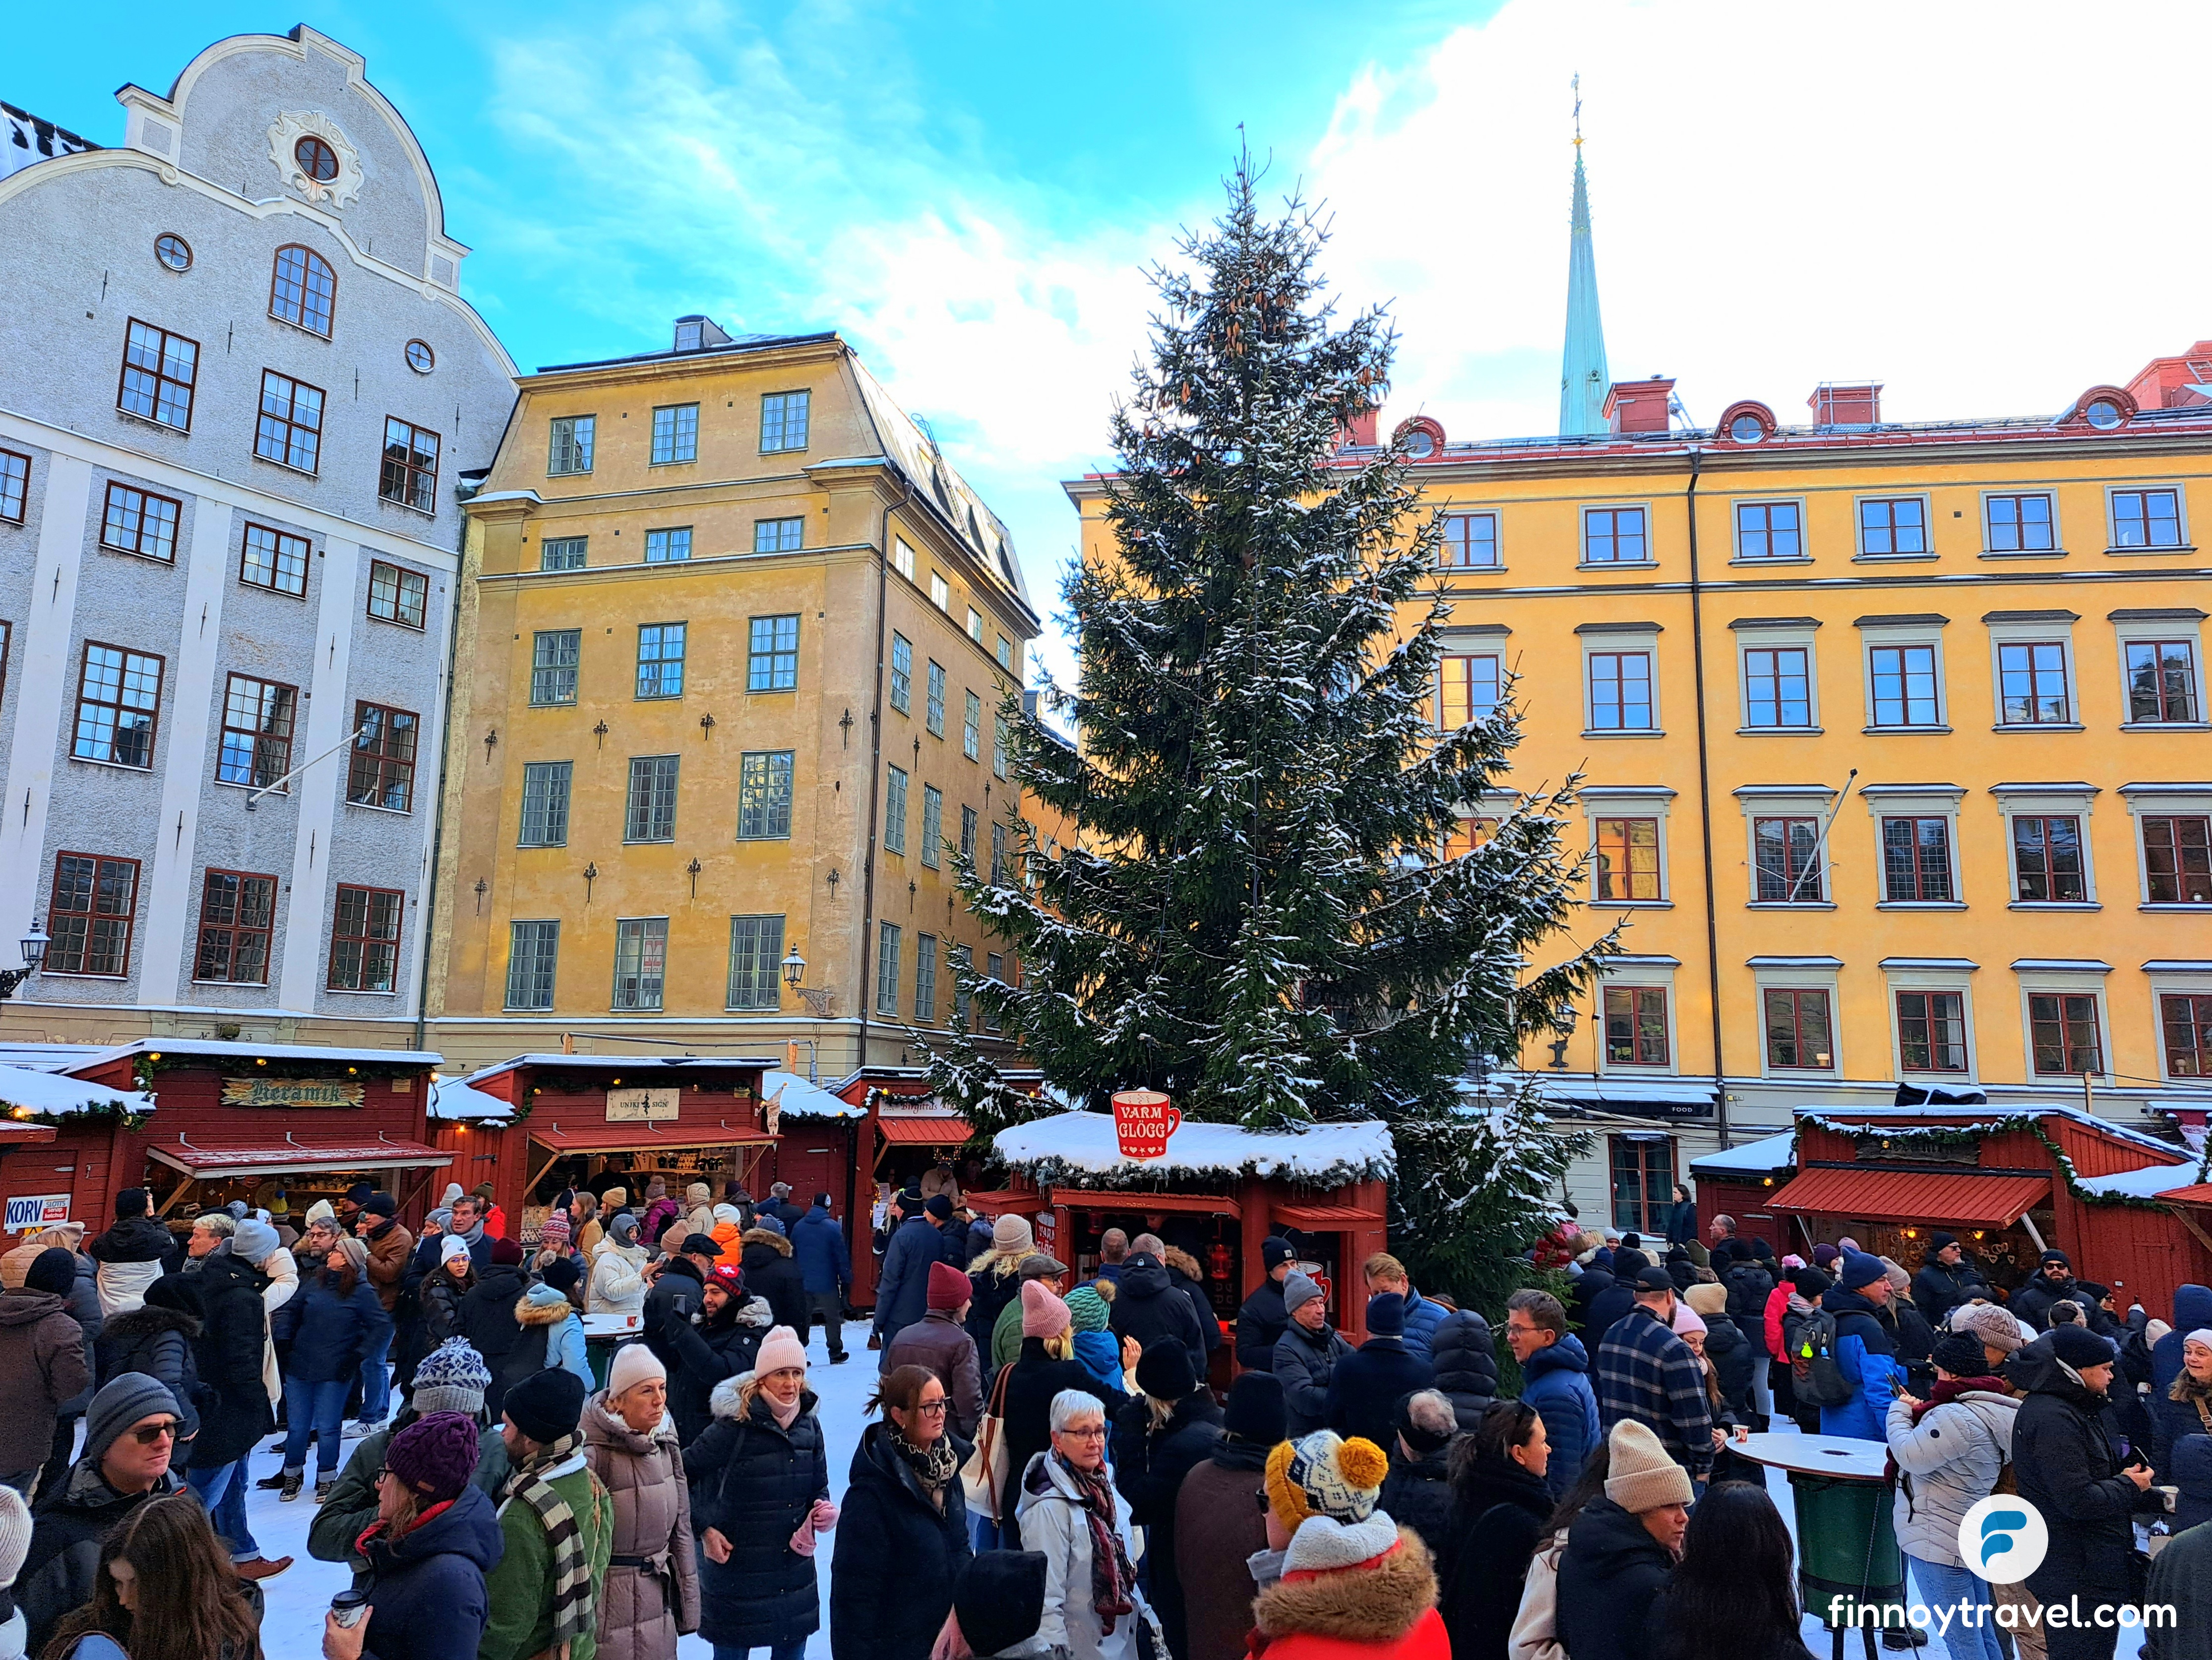 Stortoget_Christmas_Market_overview_Stockholm.jpg